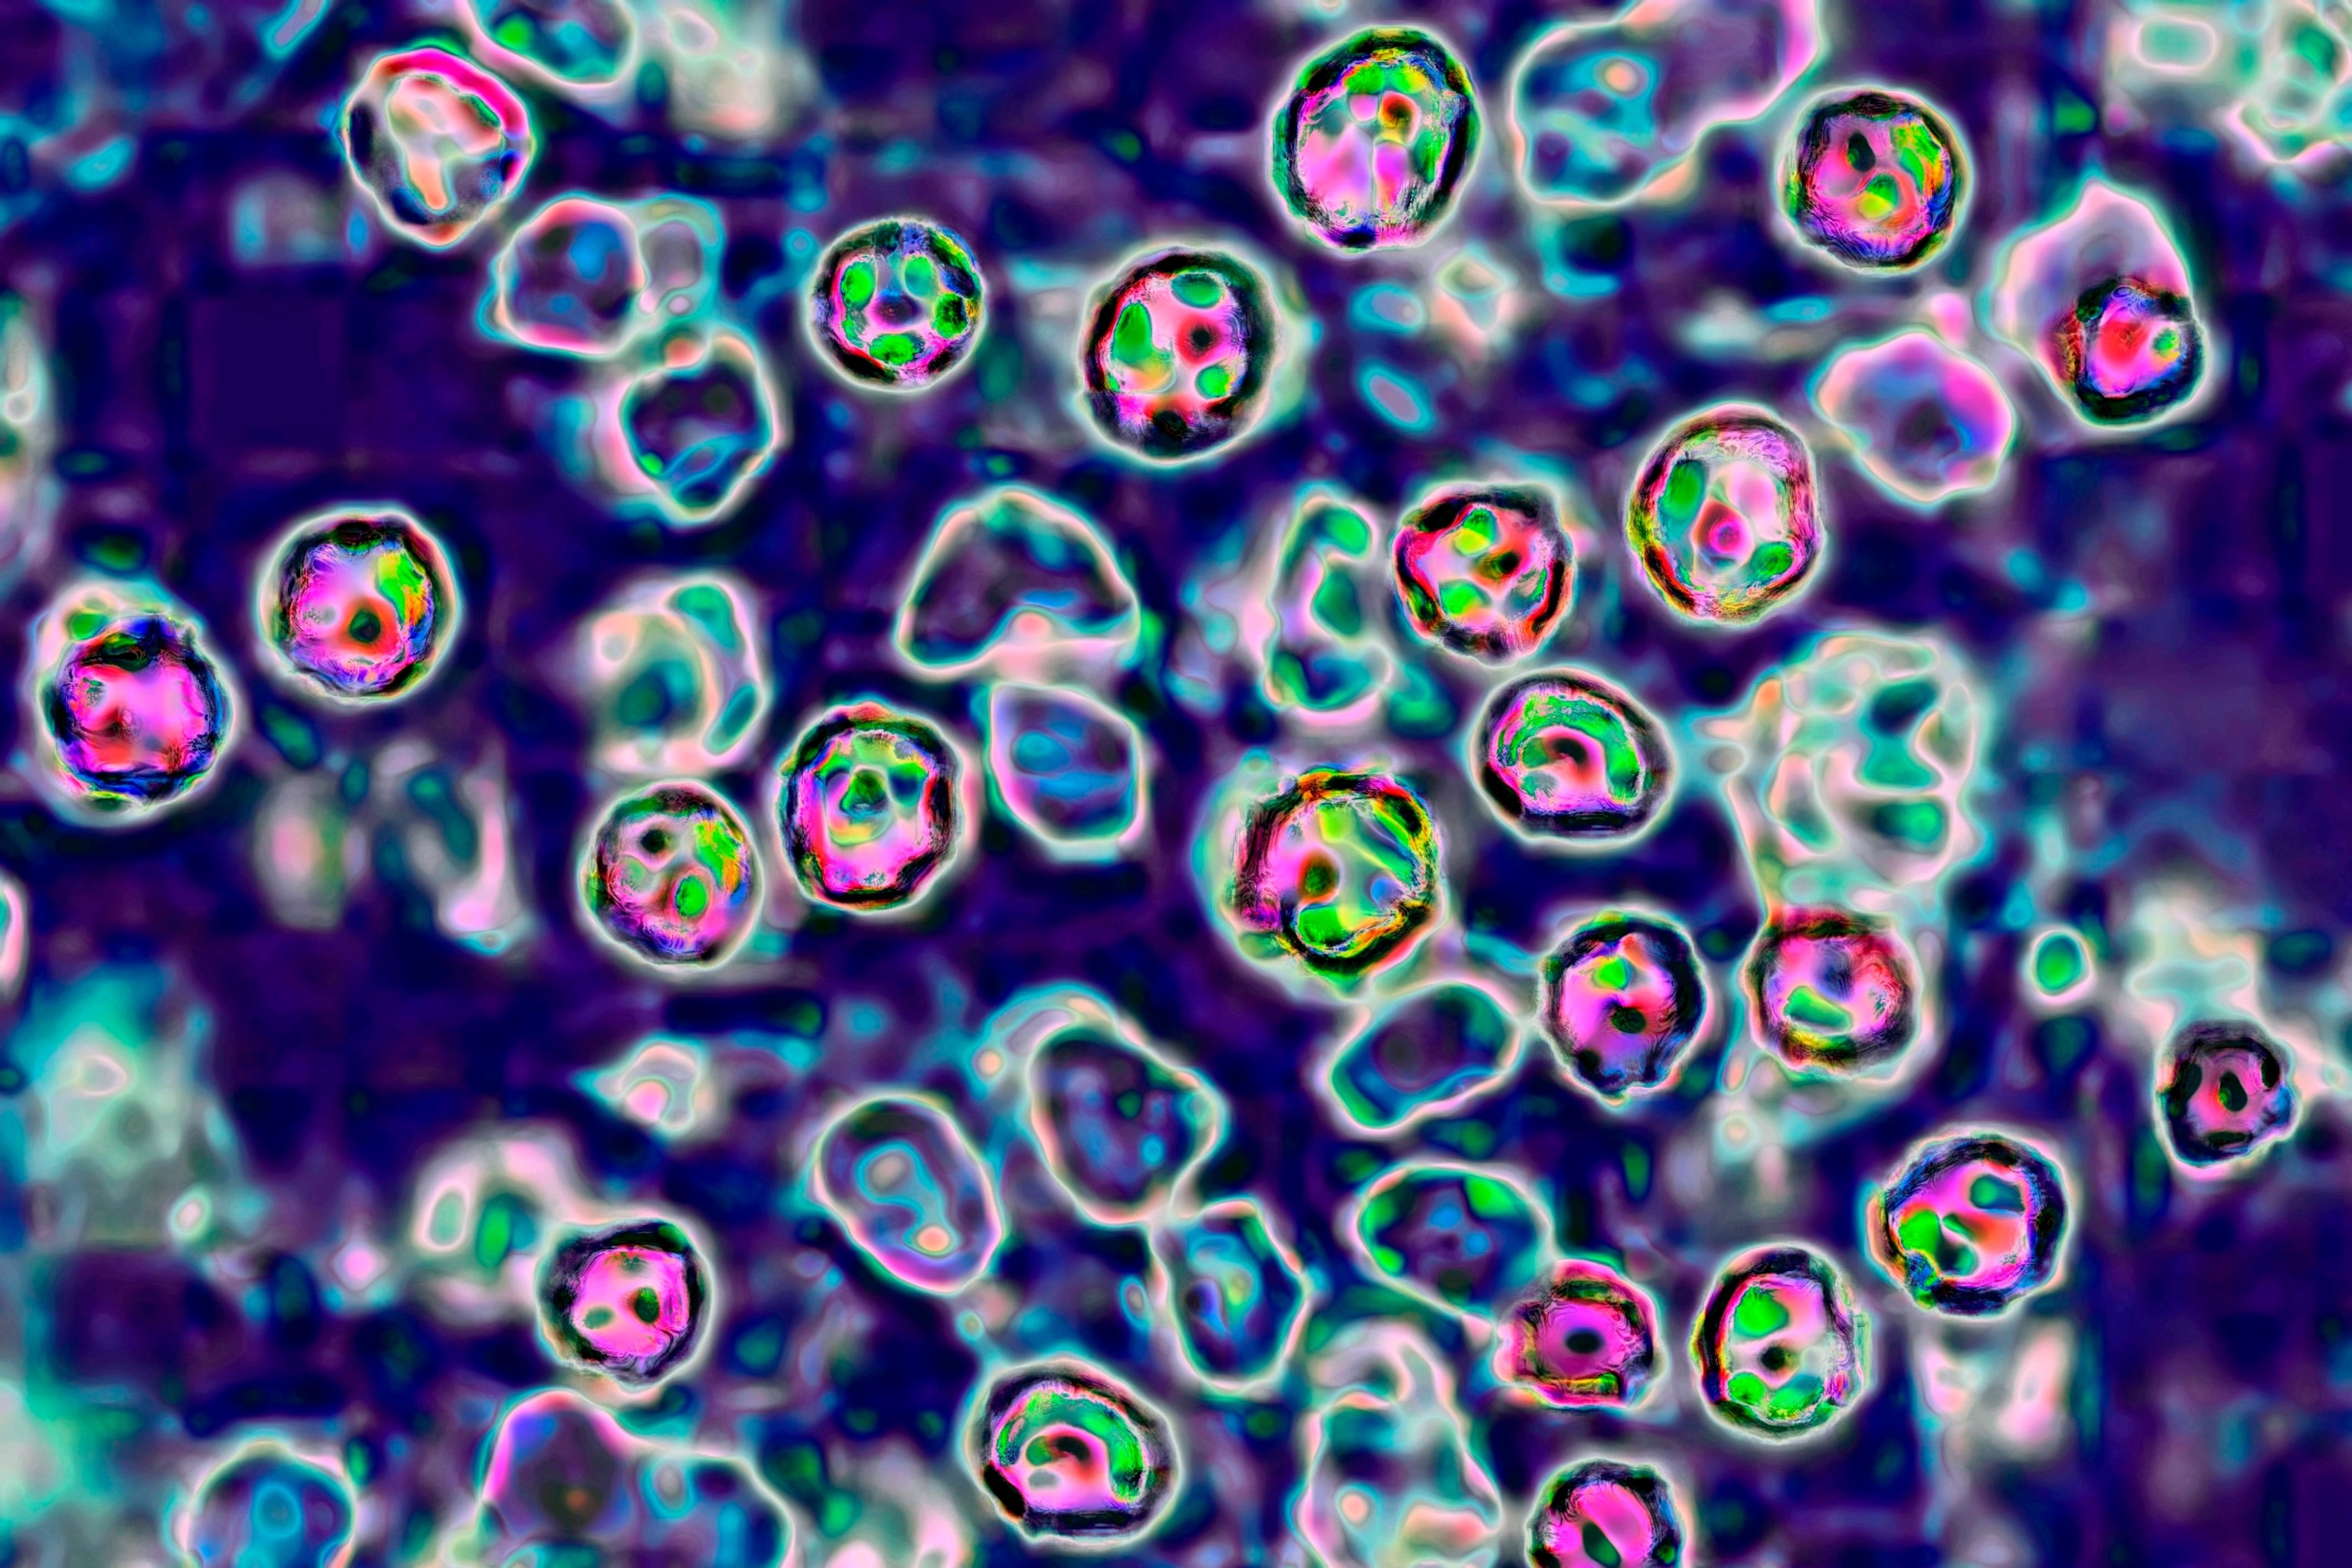 FOTO: Virus ospica, prikaz transmisije mikroskopom. 